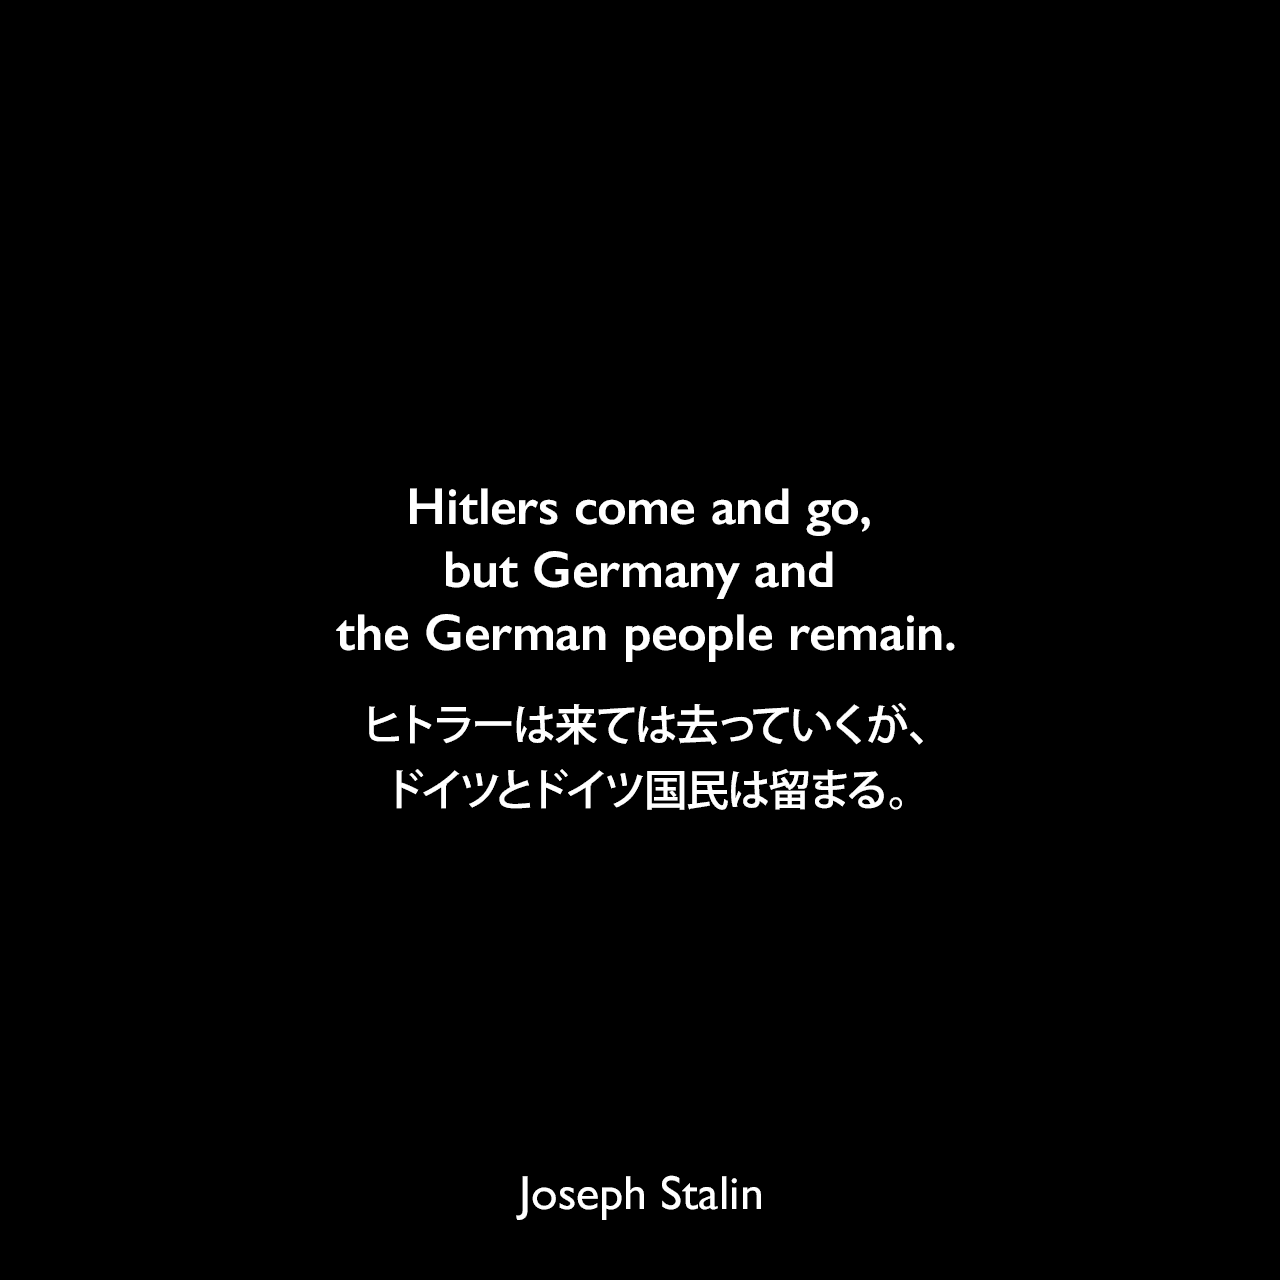 Hitlers come and go, but Germany and the German people remain.ヒトラーは来ては去っていくが、ドイツとドイツ国民は留まる。- スターリンが第二次世界大戦中に敵がモスクワの門に到達したときに言った言葉。人々にすべてのドイツ人をナチスと同一視しないように呼びかけた。Joseph Stalin